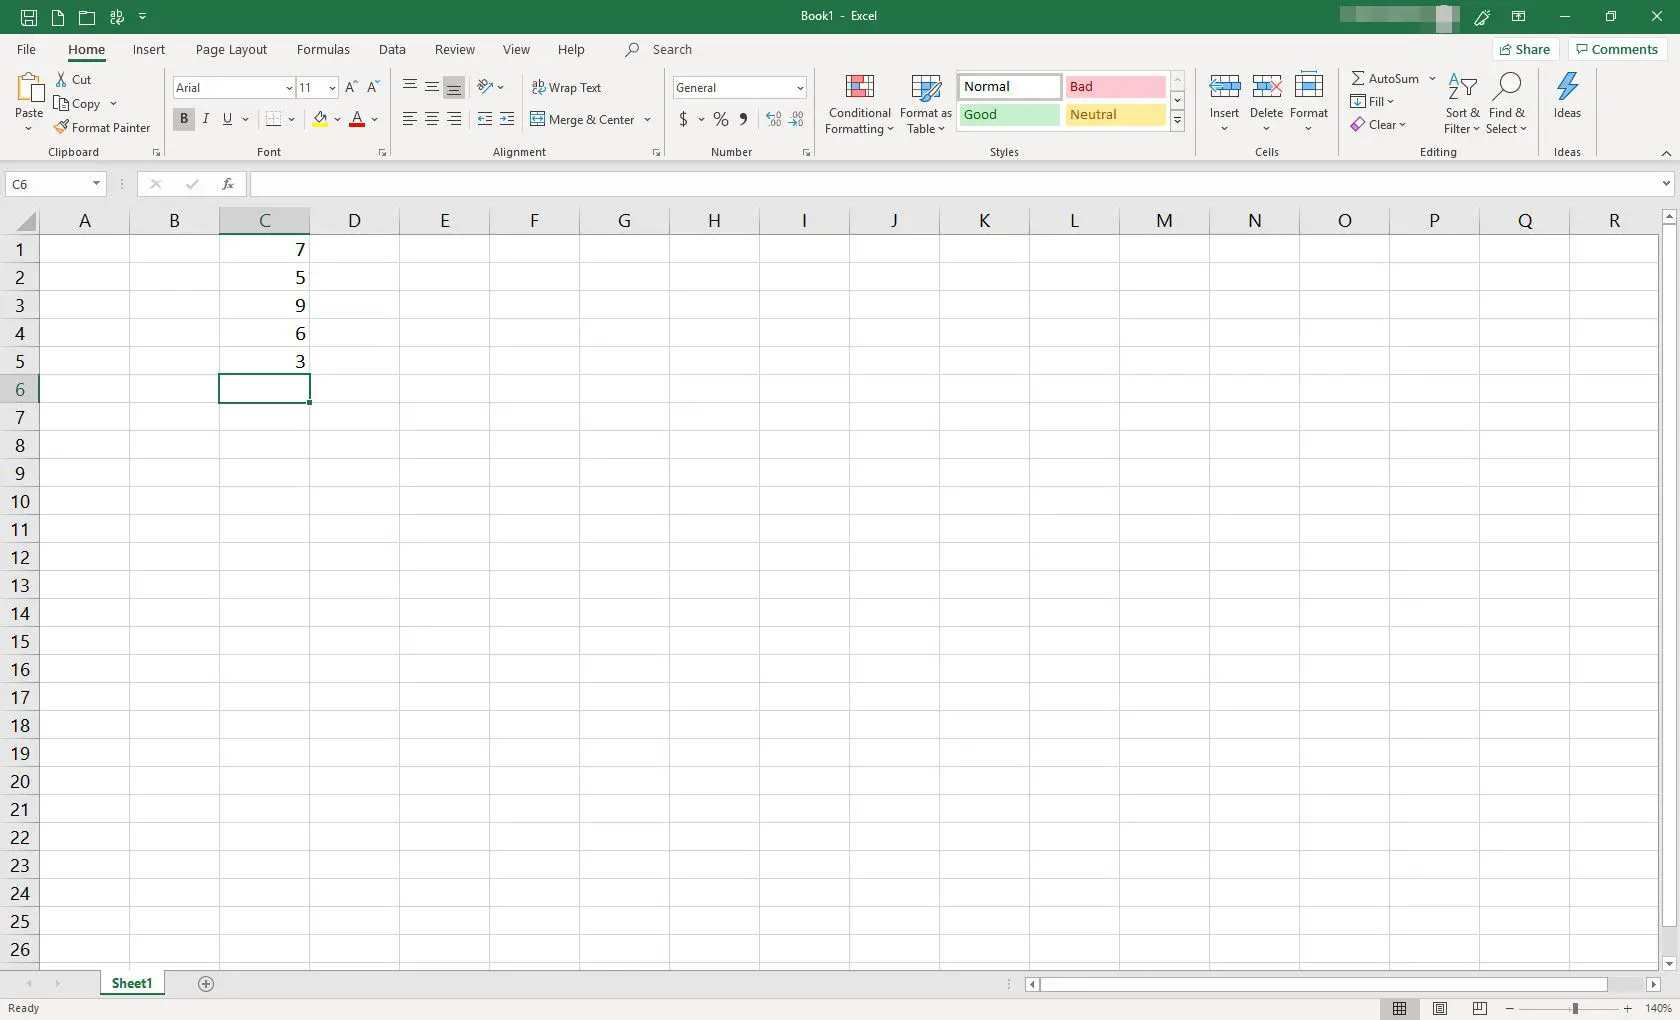 Planilha do MS Excel com algumas células preenchidas com dados